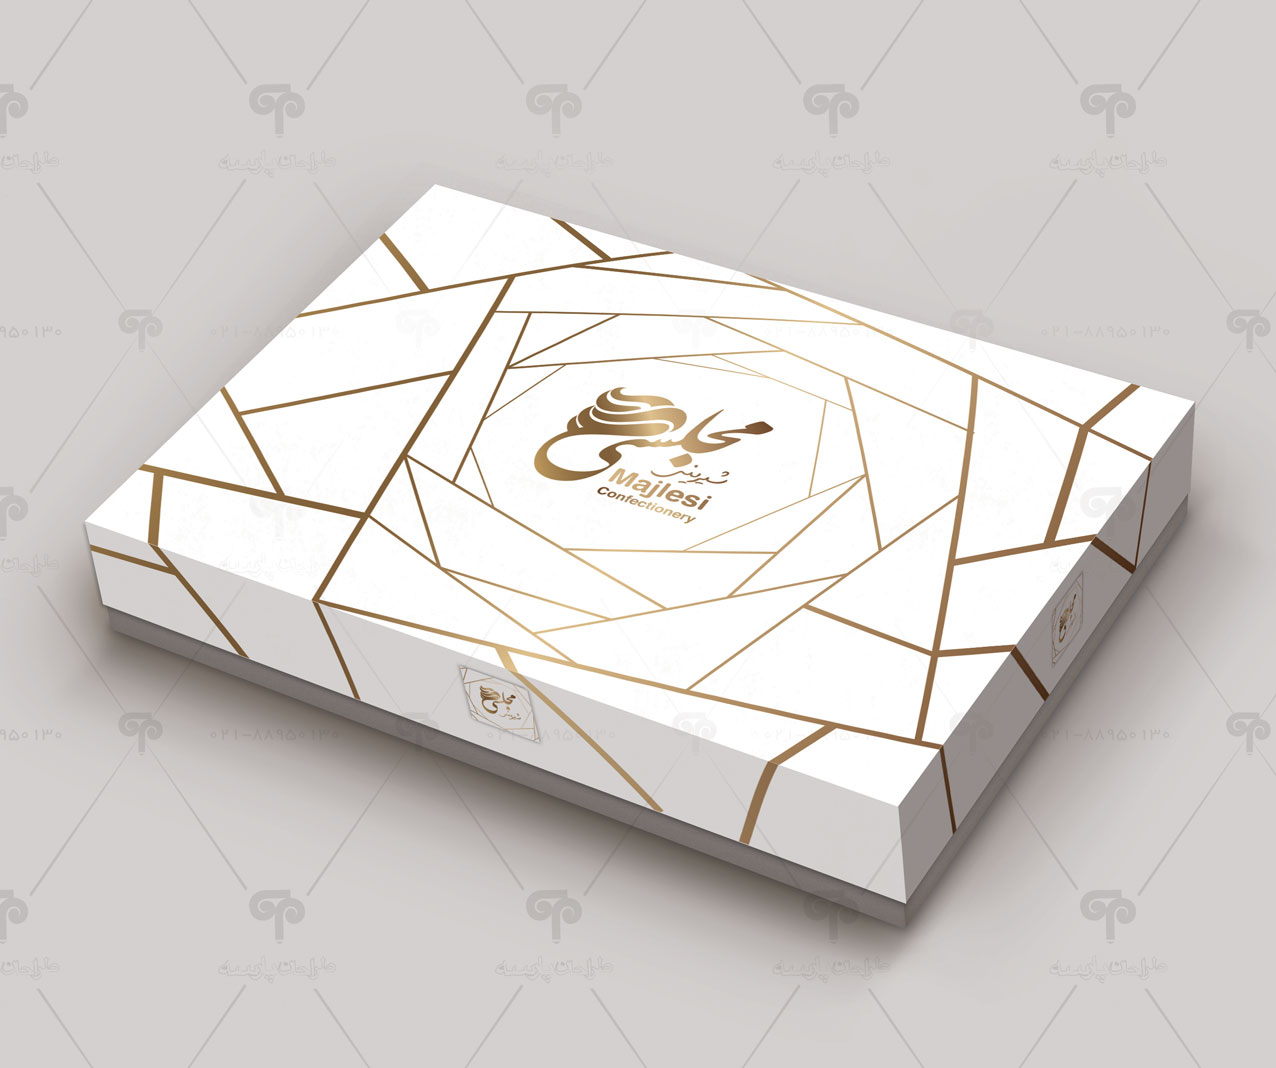 طراحی جعبه شیرینی مجلسی